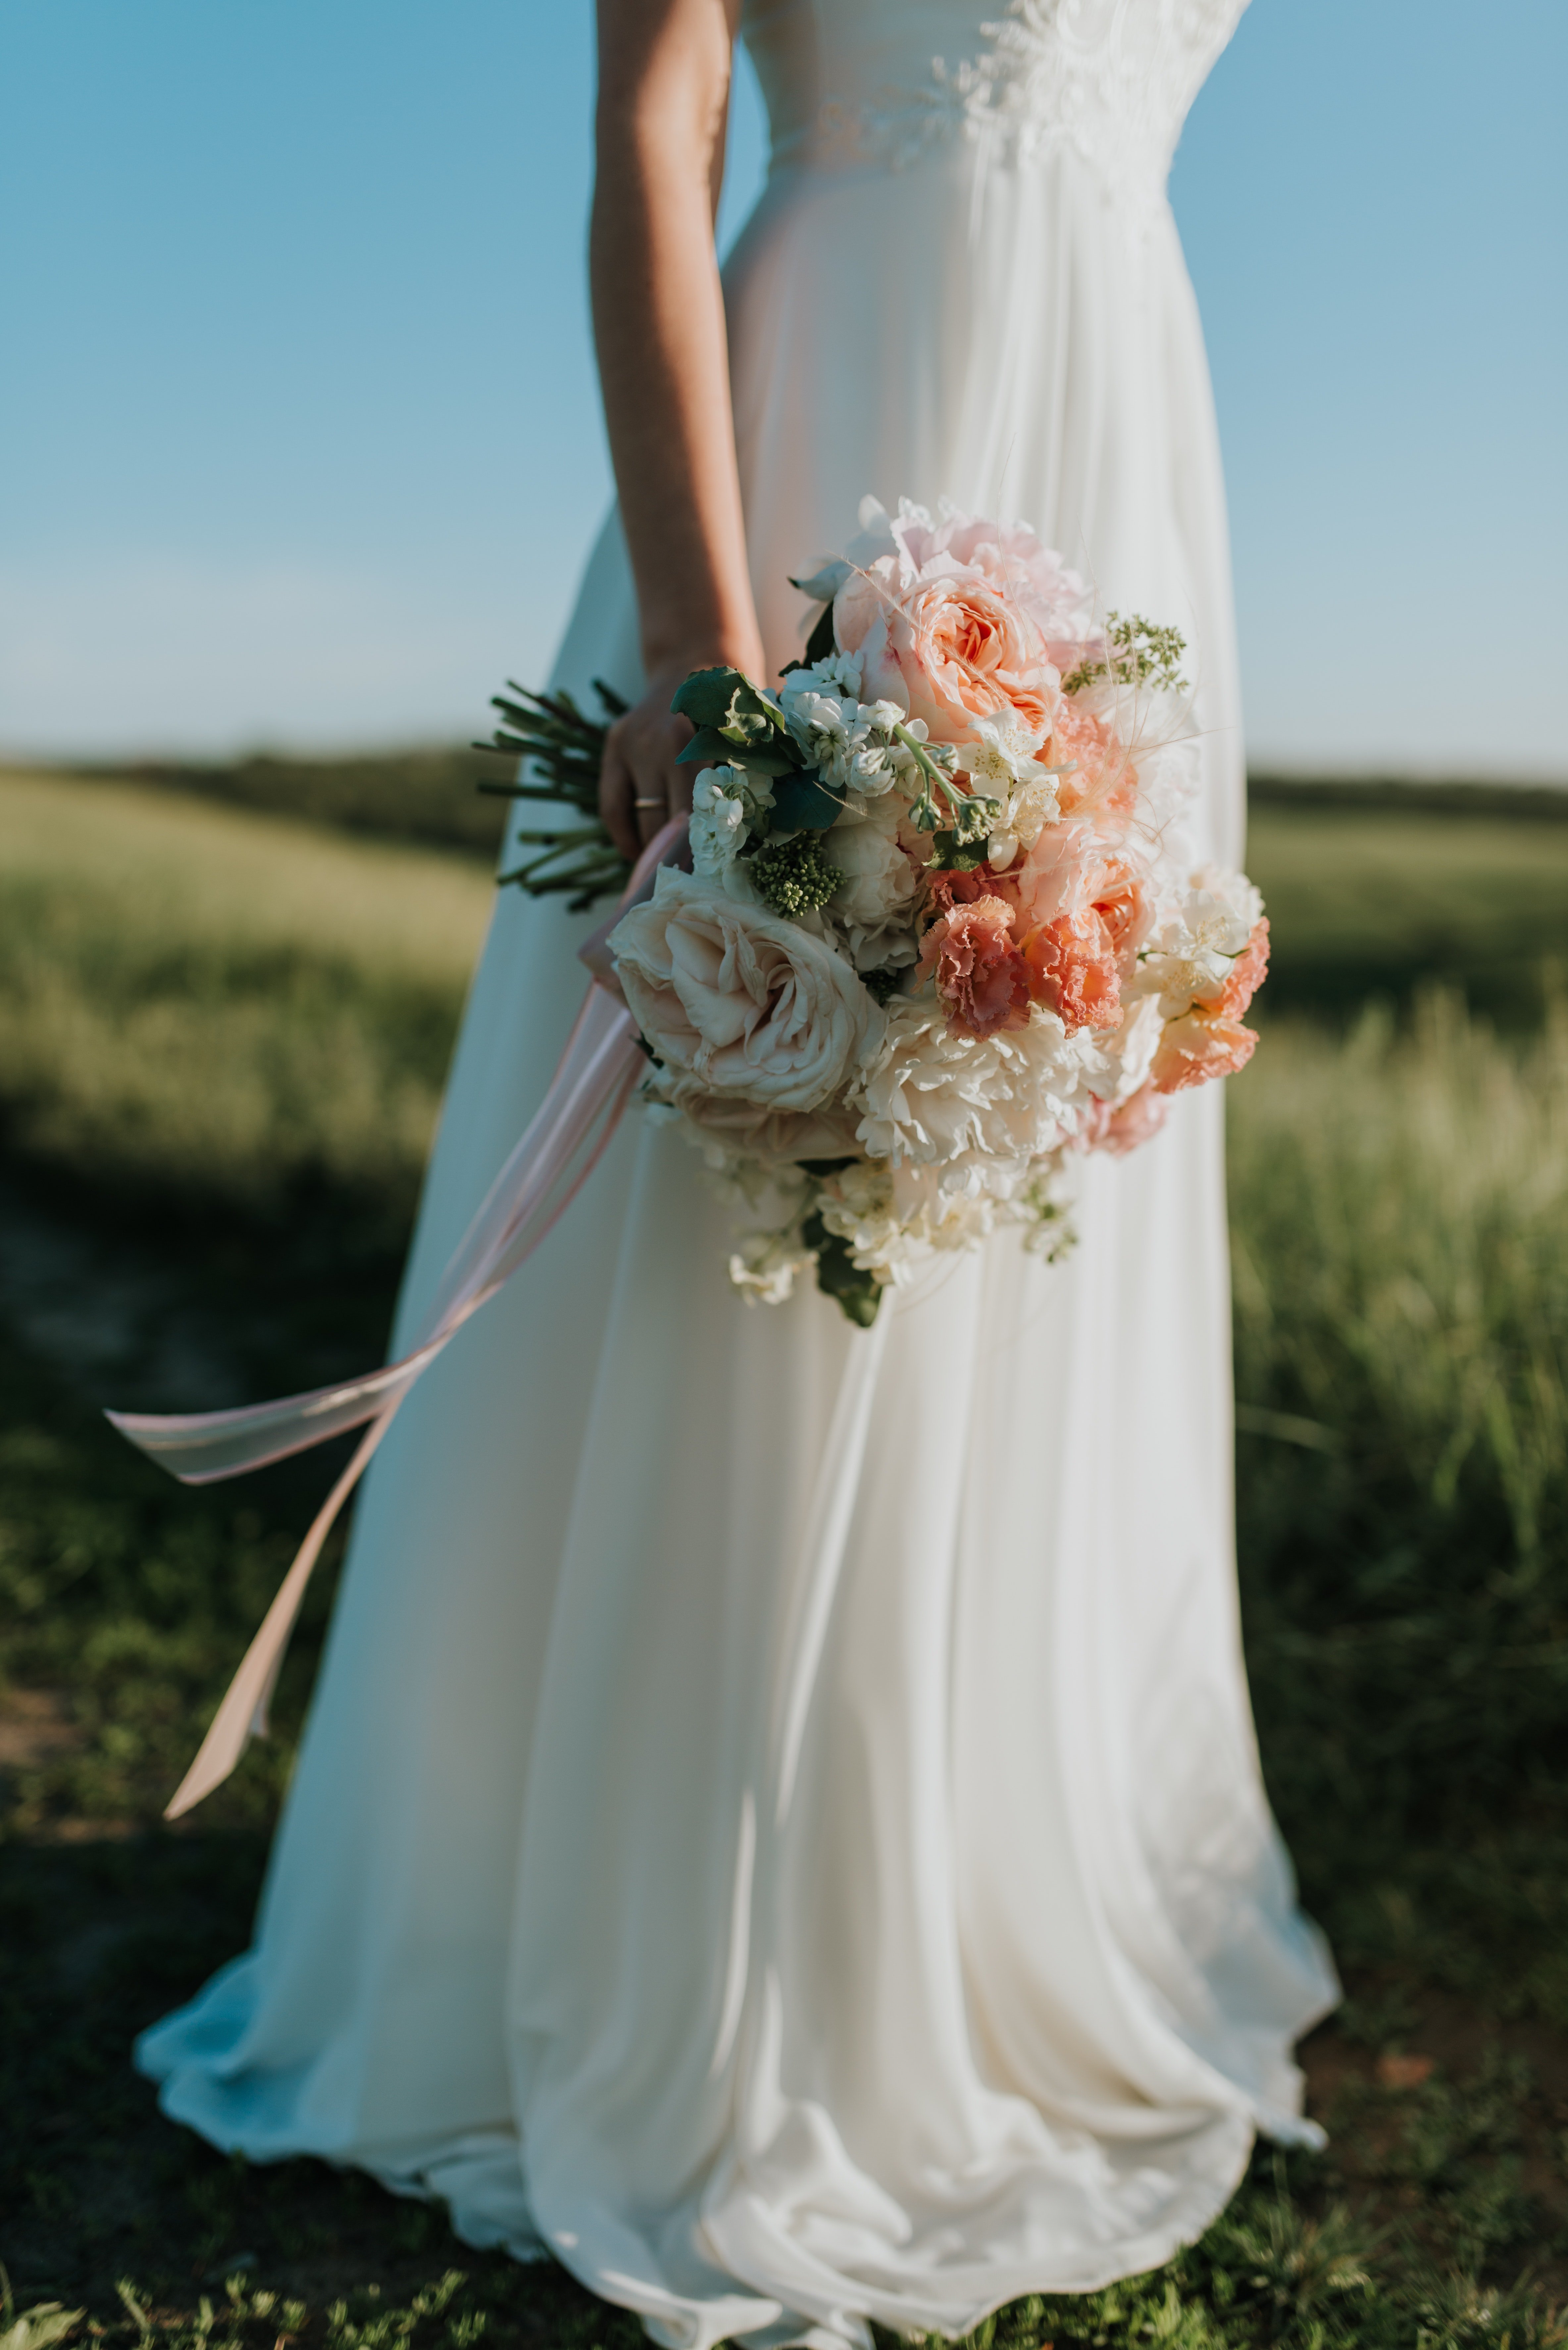 Une robe de mariée à mancherons. | Photo : Pexels